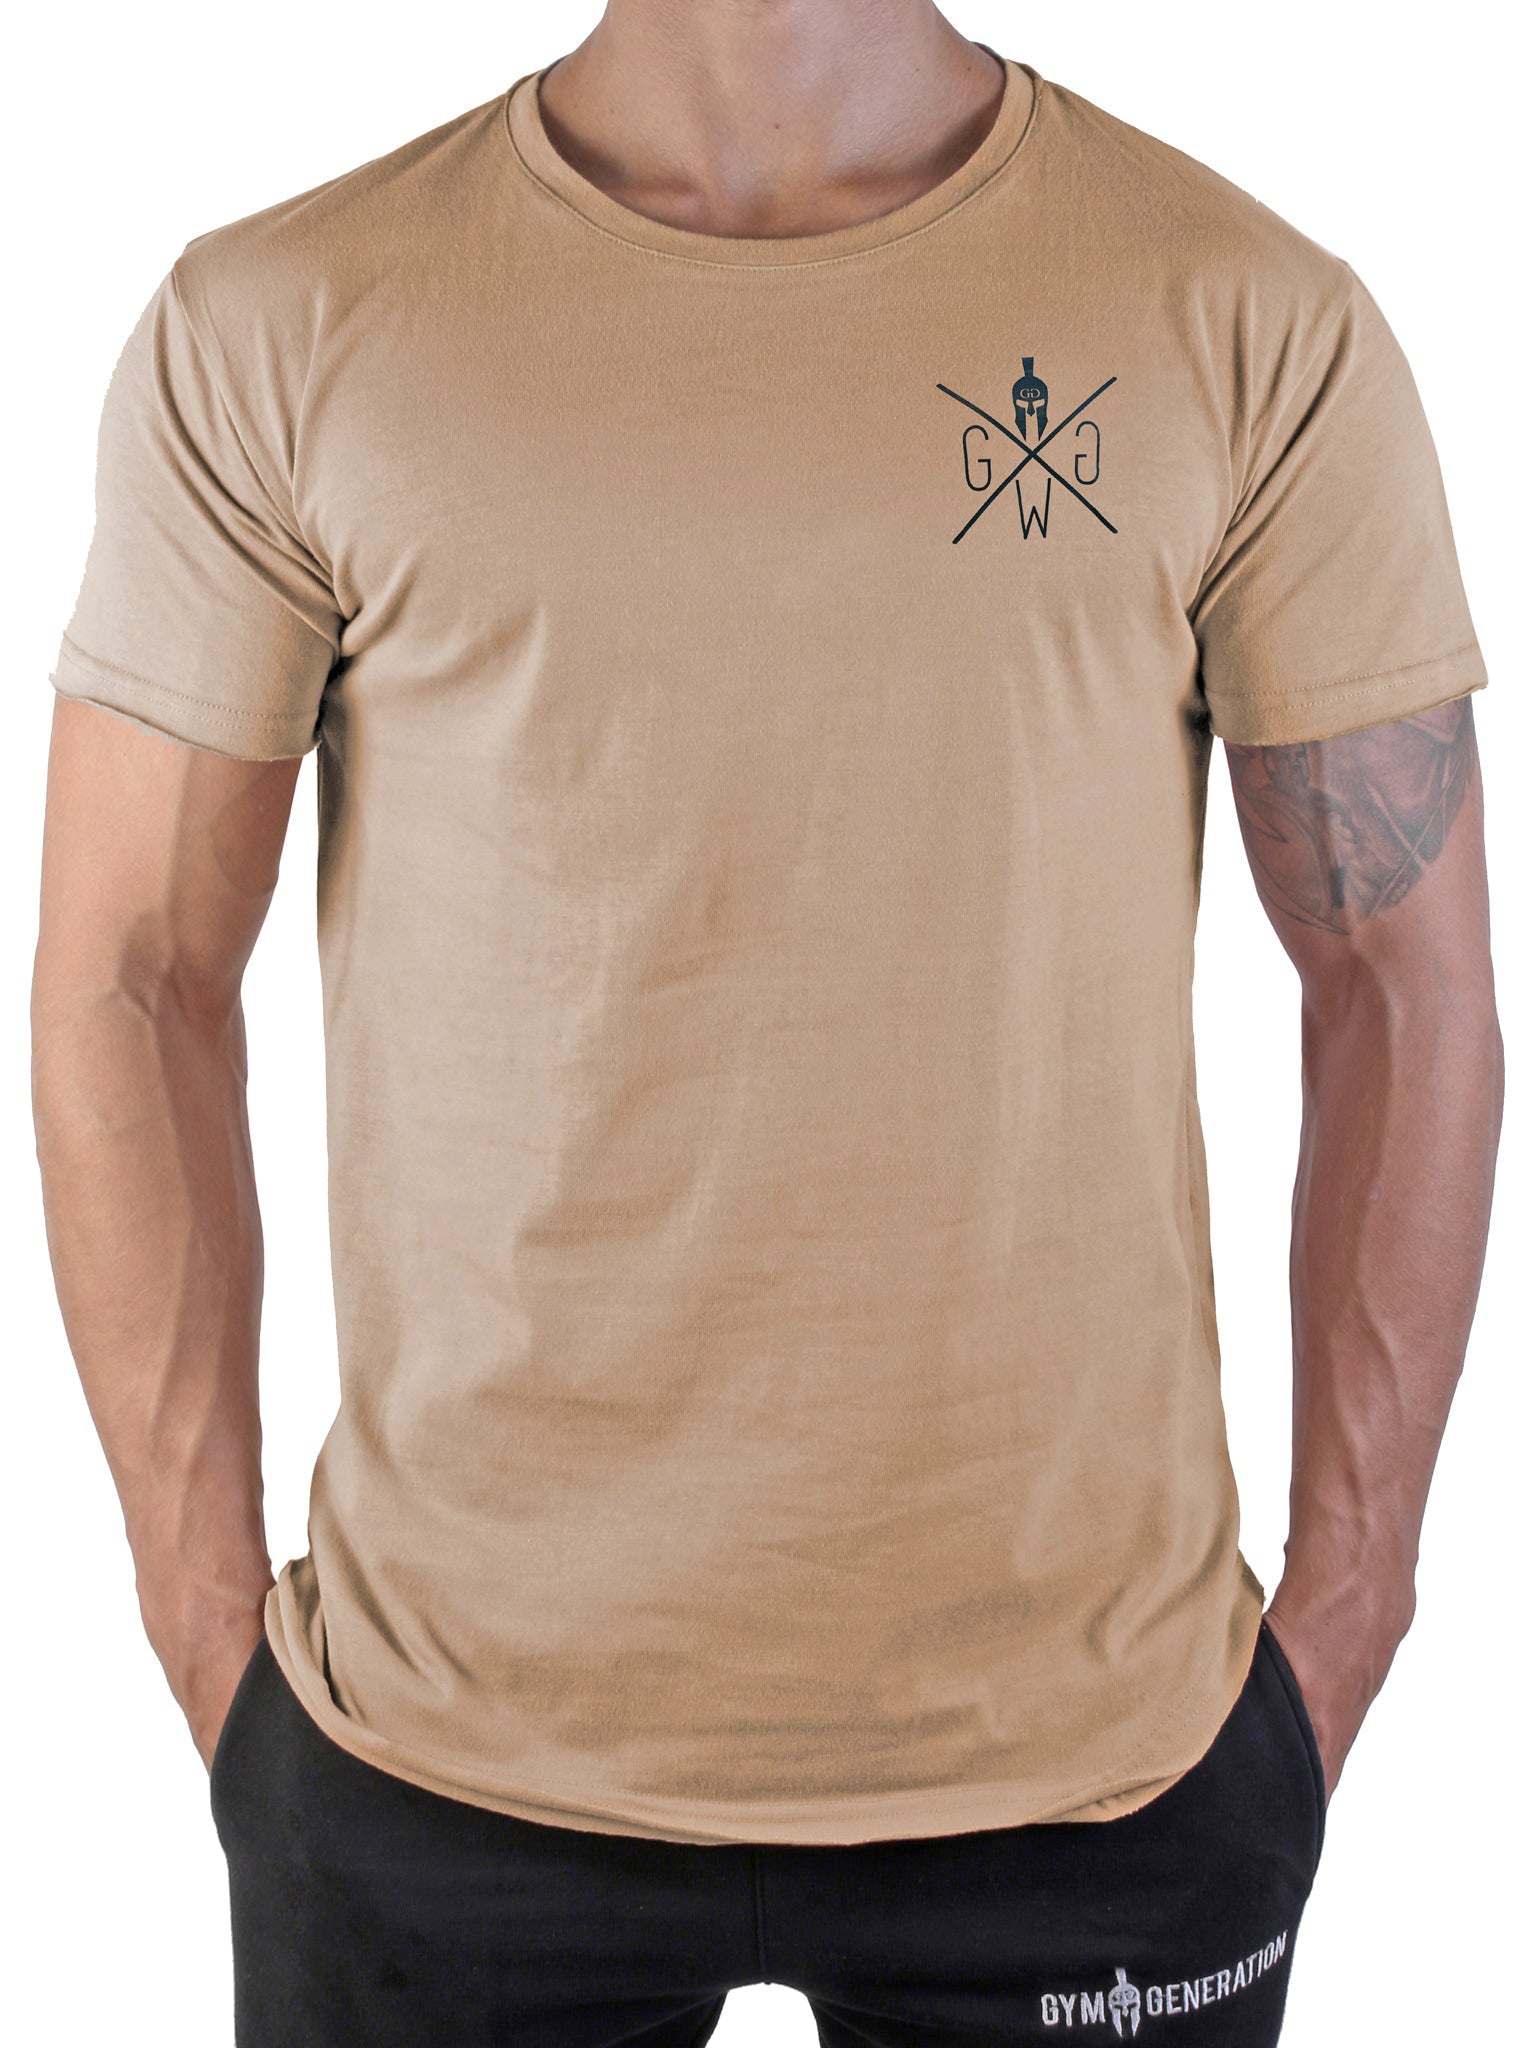 Herren Gym T-Shirt in Off White von Gym Generation mit markantem Spartaner-Logo, ideal für stilvolle Workouts.